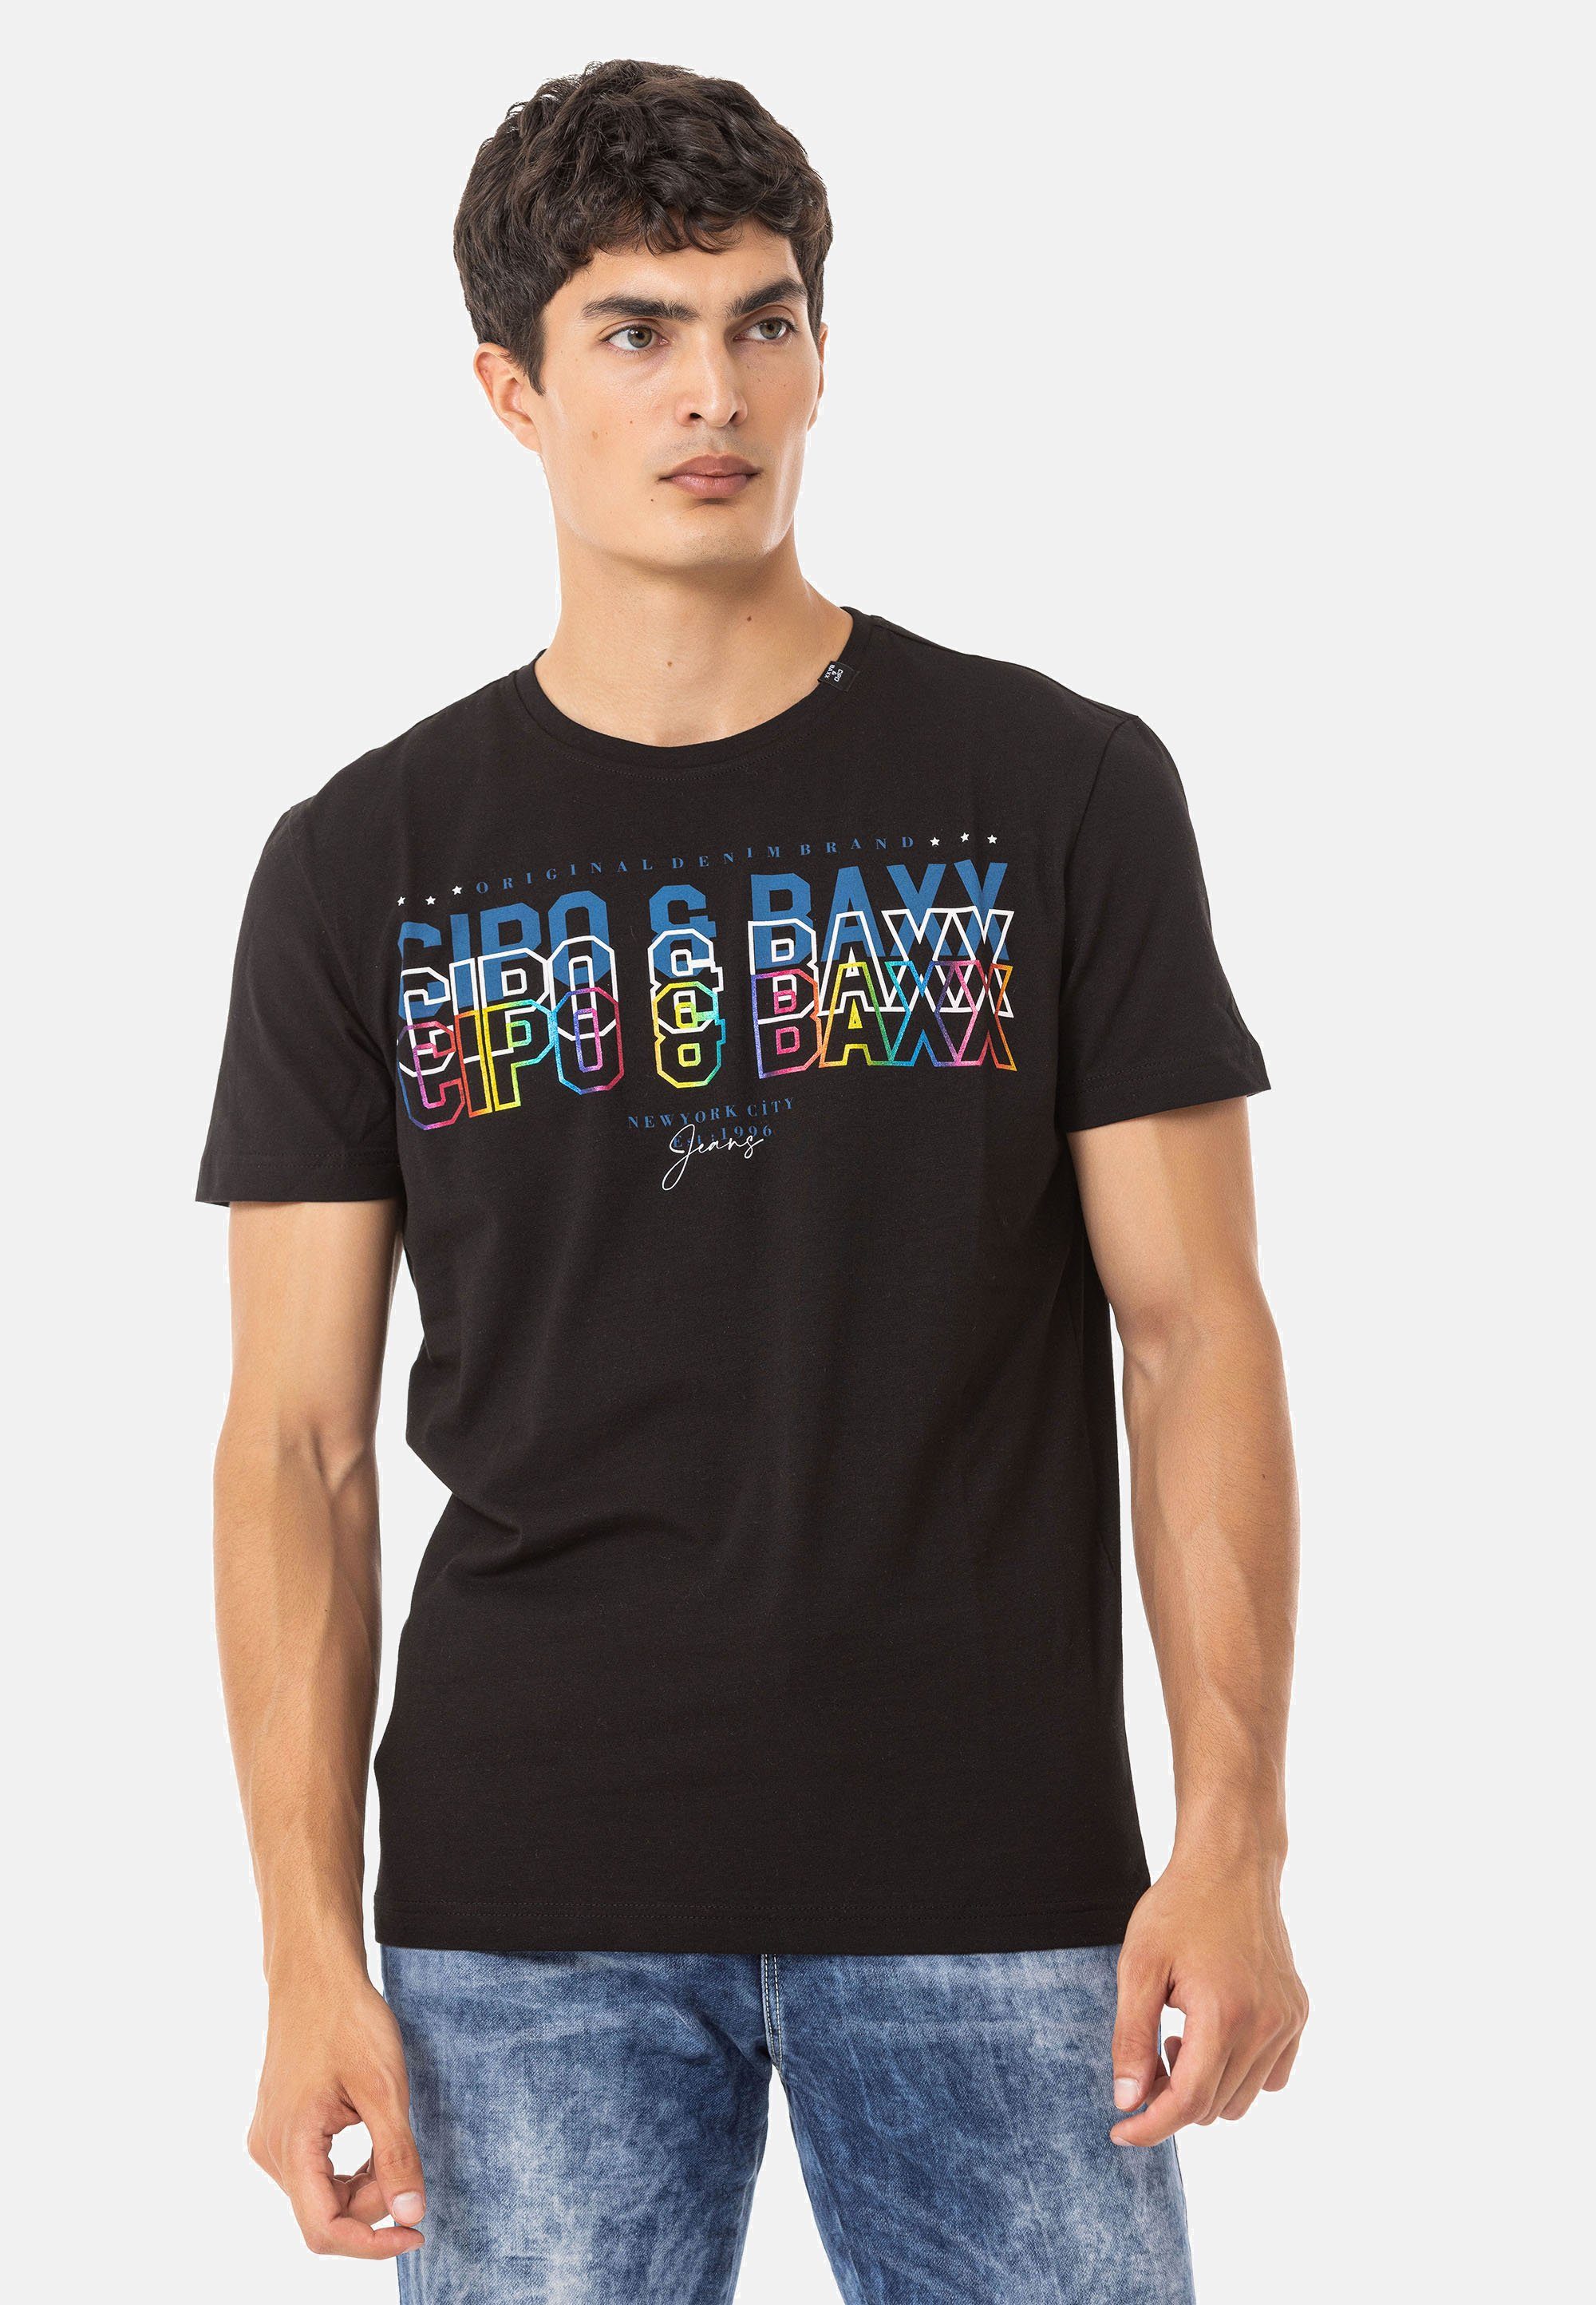 mit Baxx Cipo Markenprint schwarz T-Shirt & trendigem CT717